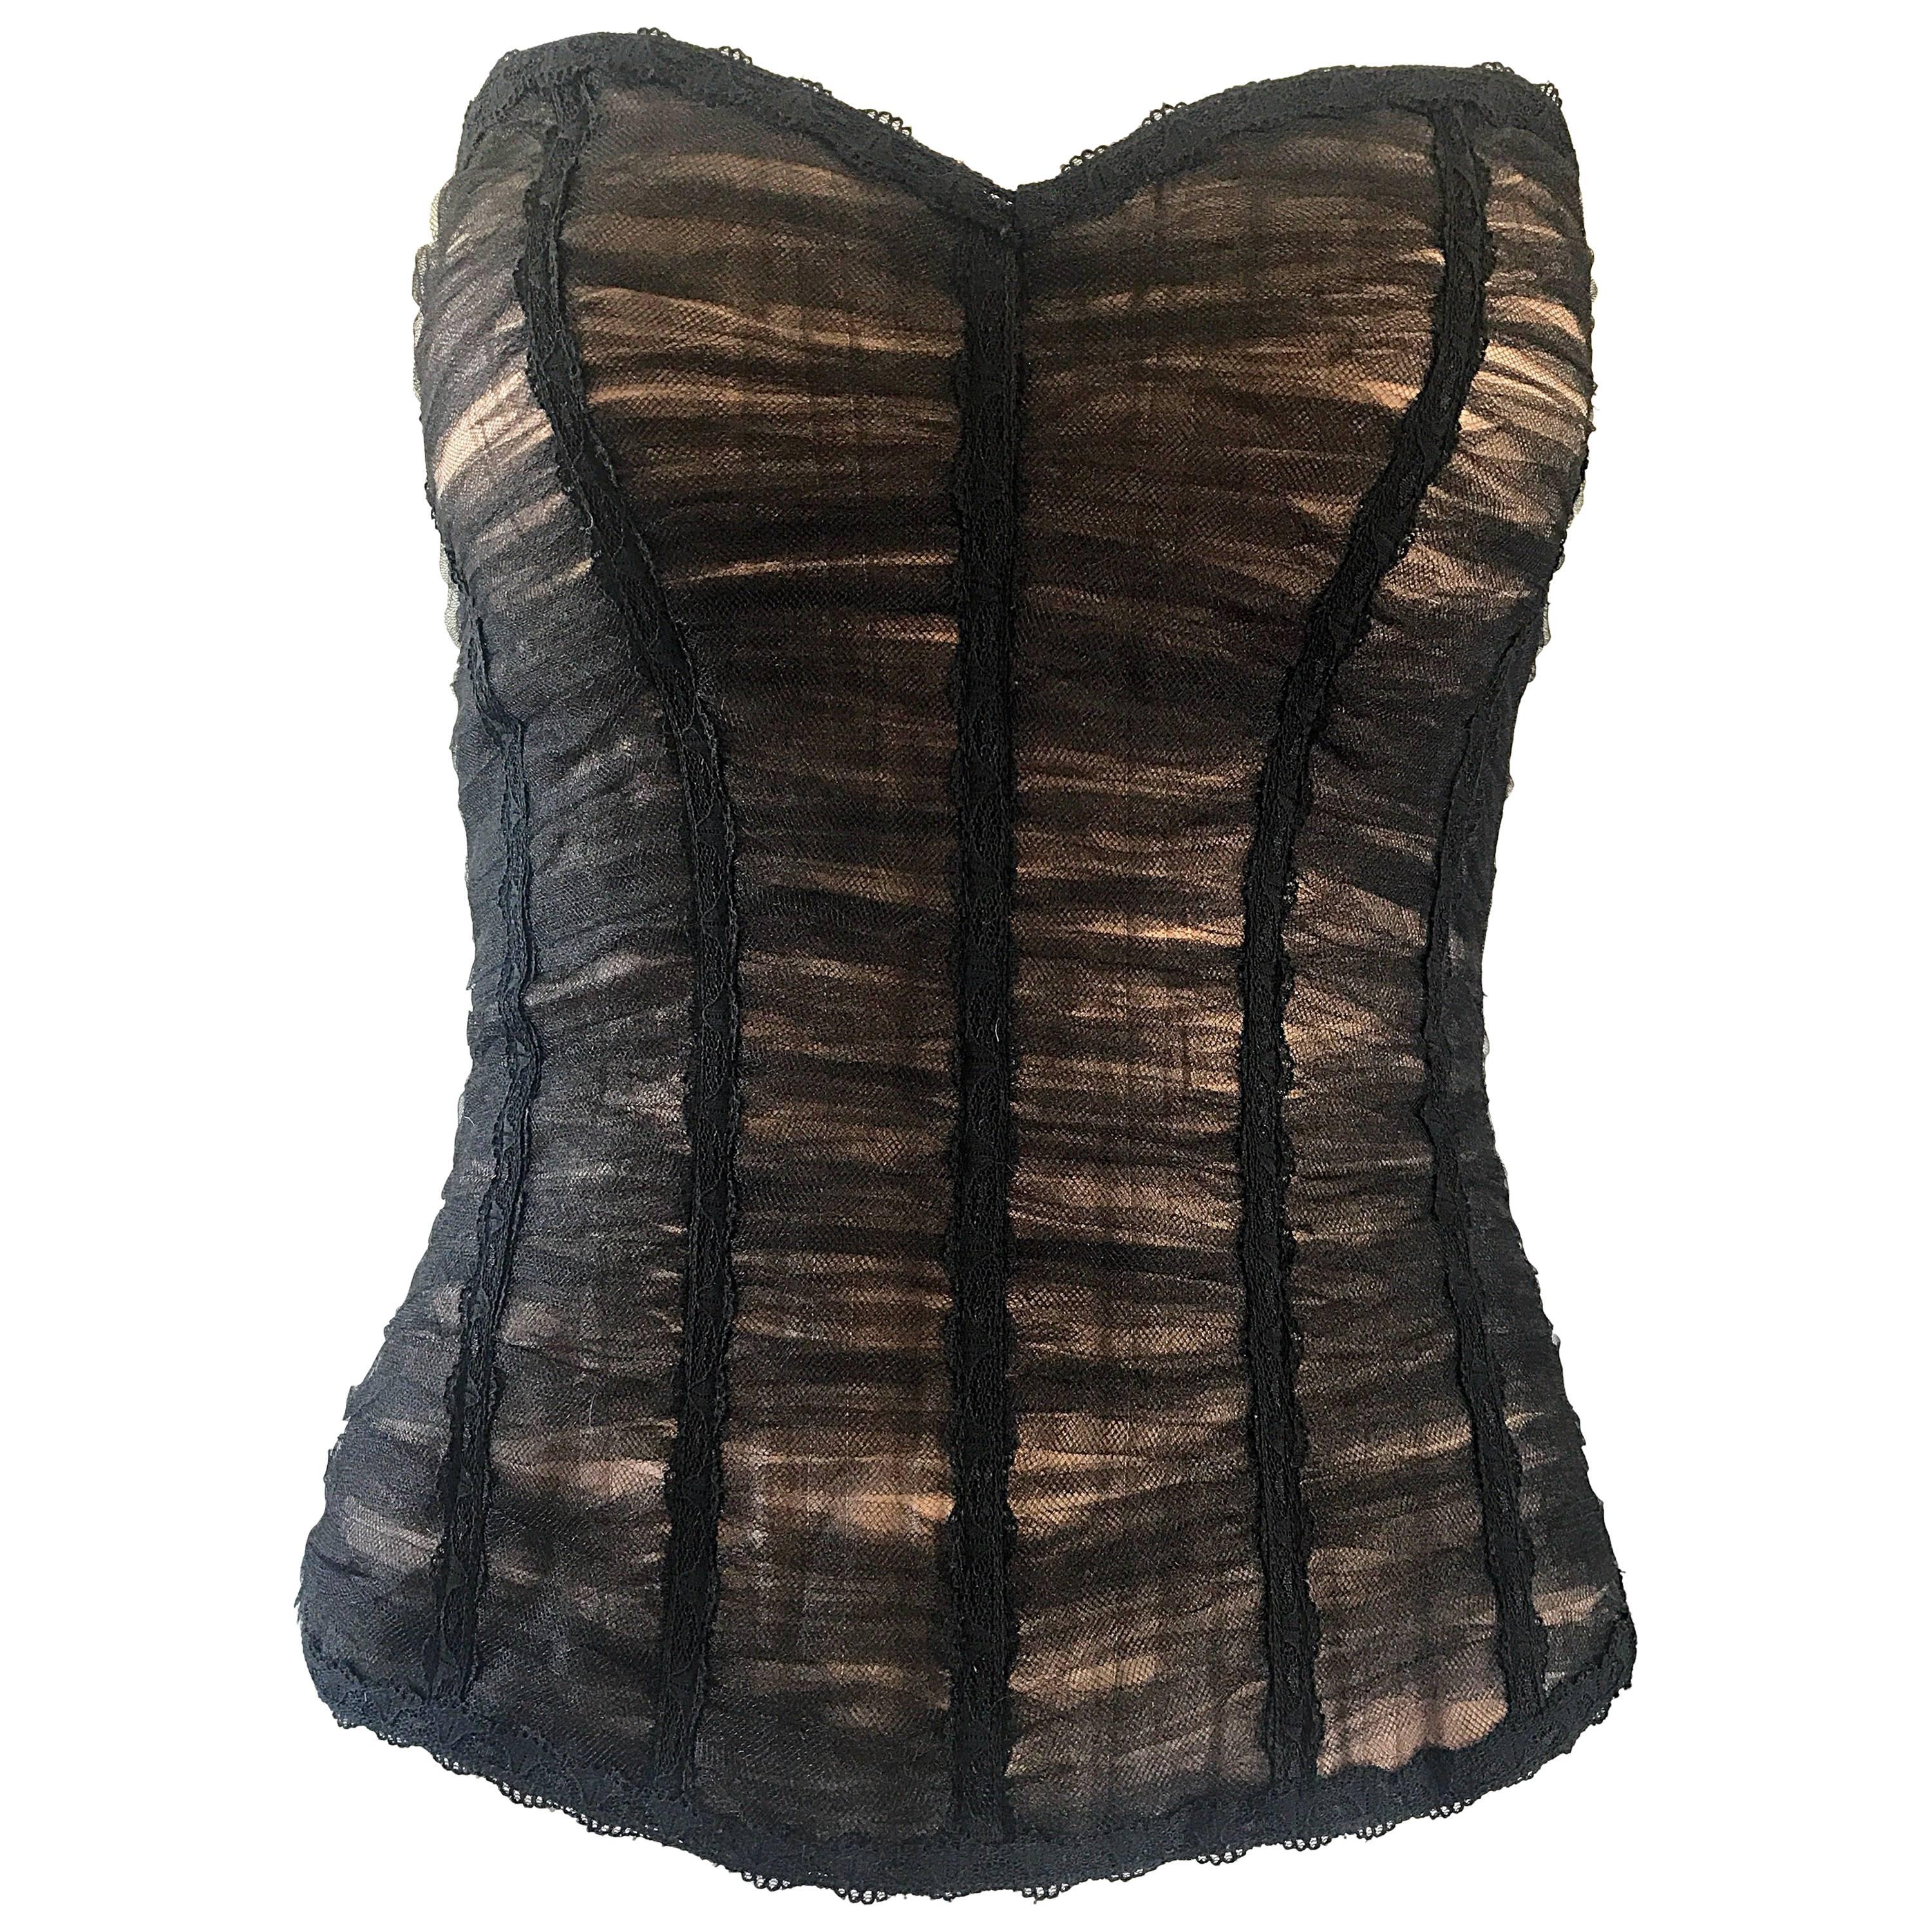 Rene Ruiz - Bustier corset haut noir et couleur chair avec bustier en filet de soie superposé, couture